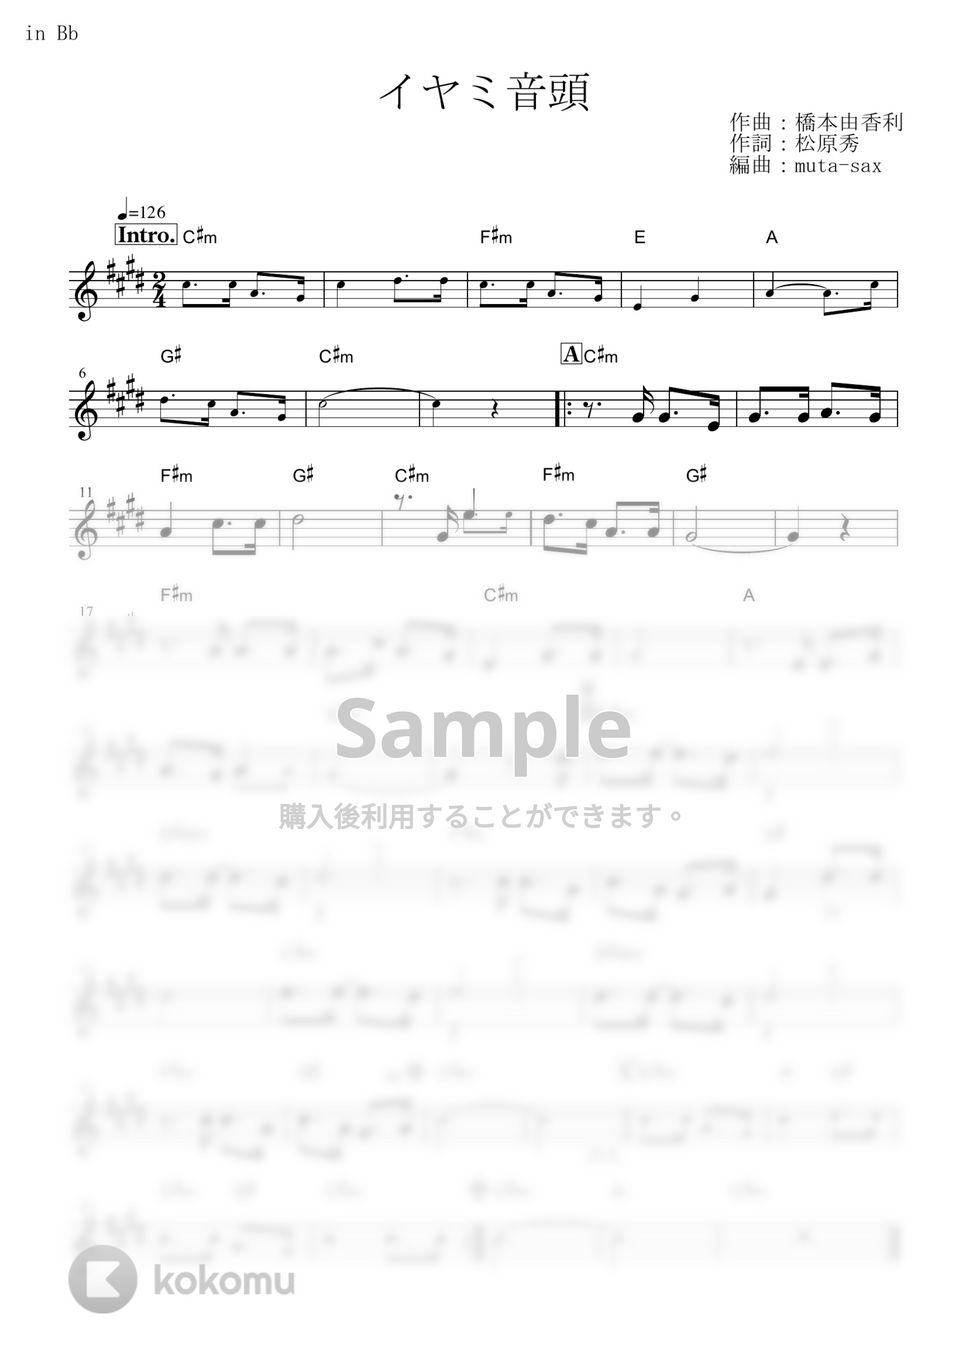 イヤミ(CV.鈴村健一) - イヤミ音頭 (『おそ松さん』 / in Bb) by muta-sax